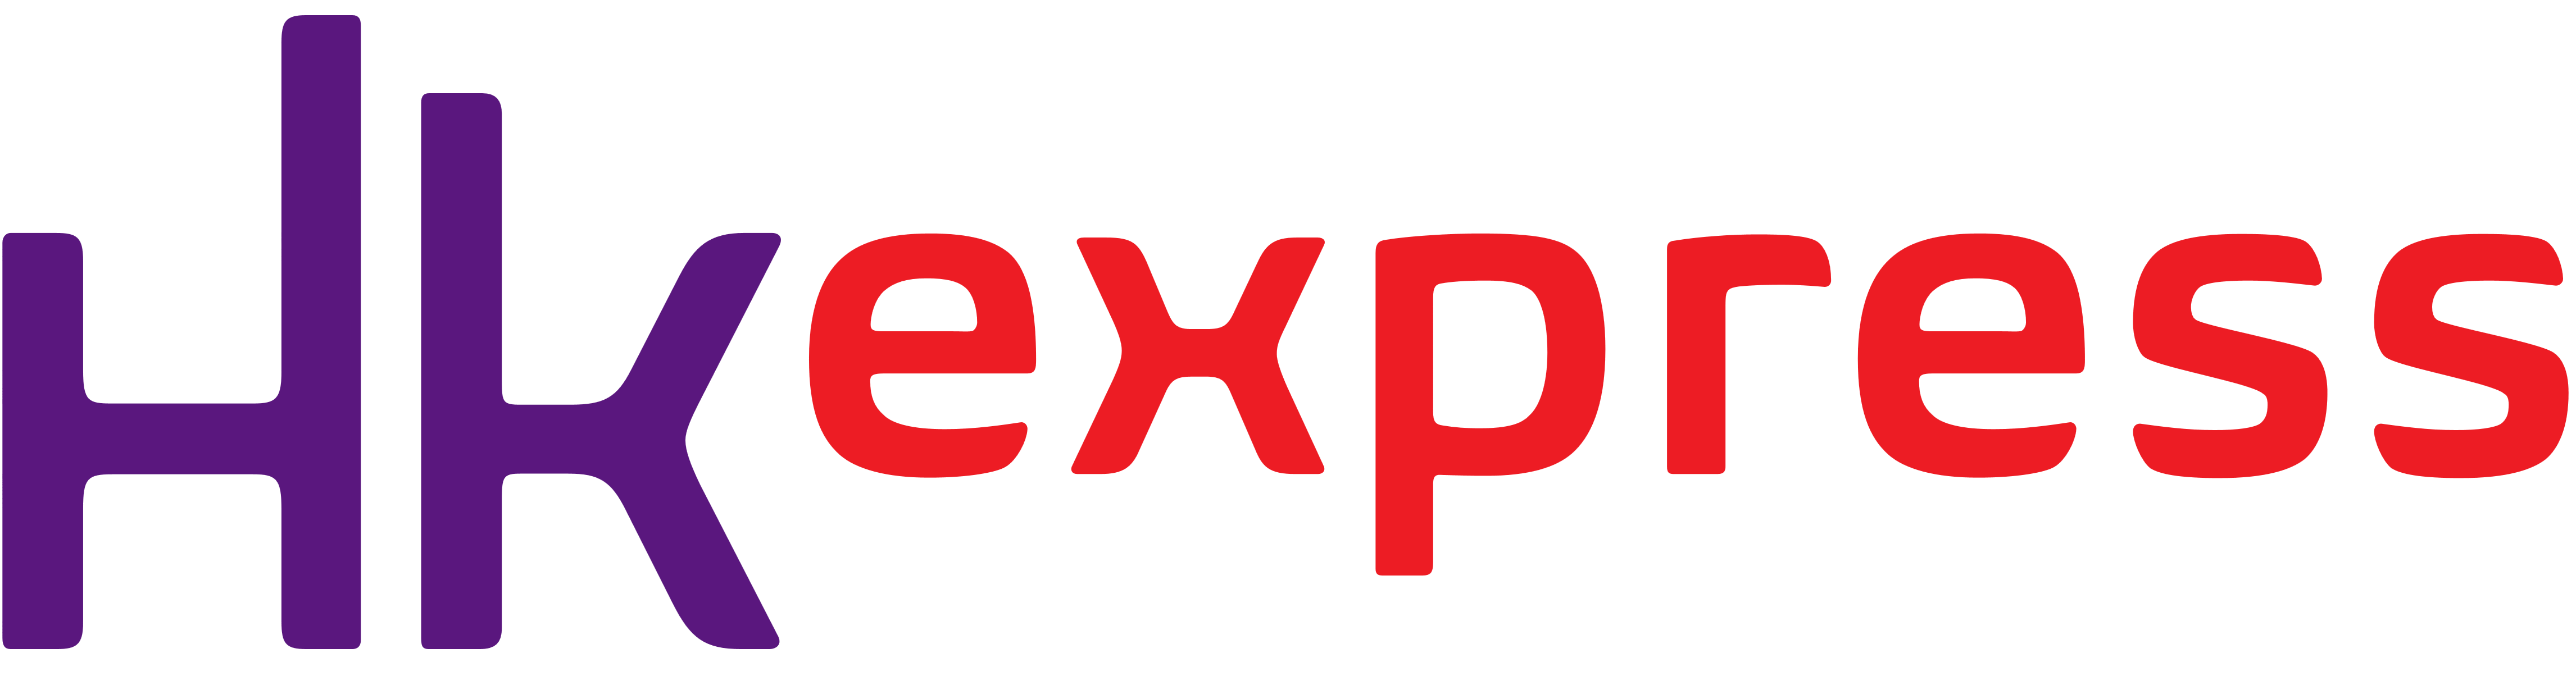 HK Express logo, logotype